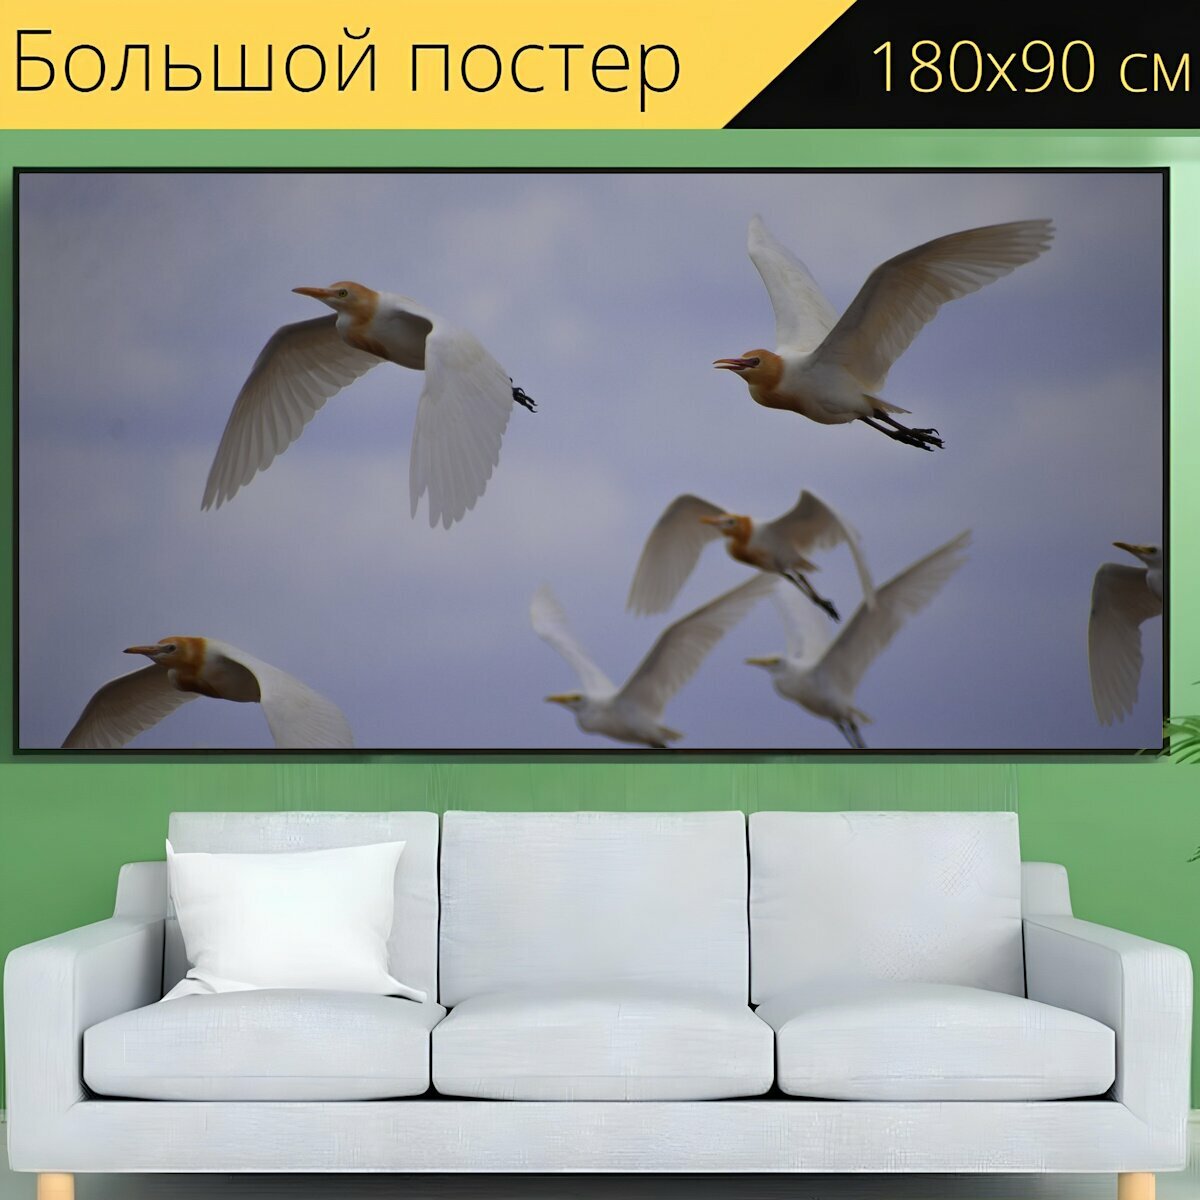 Большой постер "Краны, летят журавли, птицы" 180 x 90 см. для интерьера